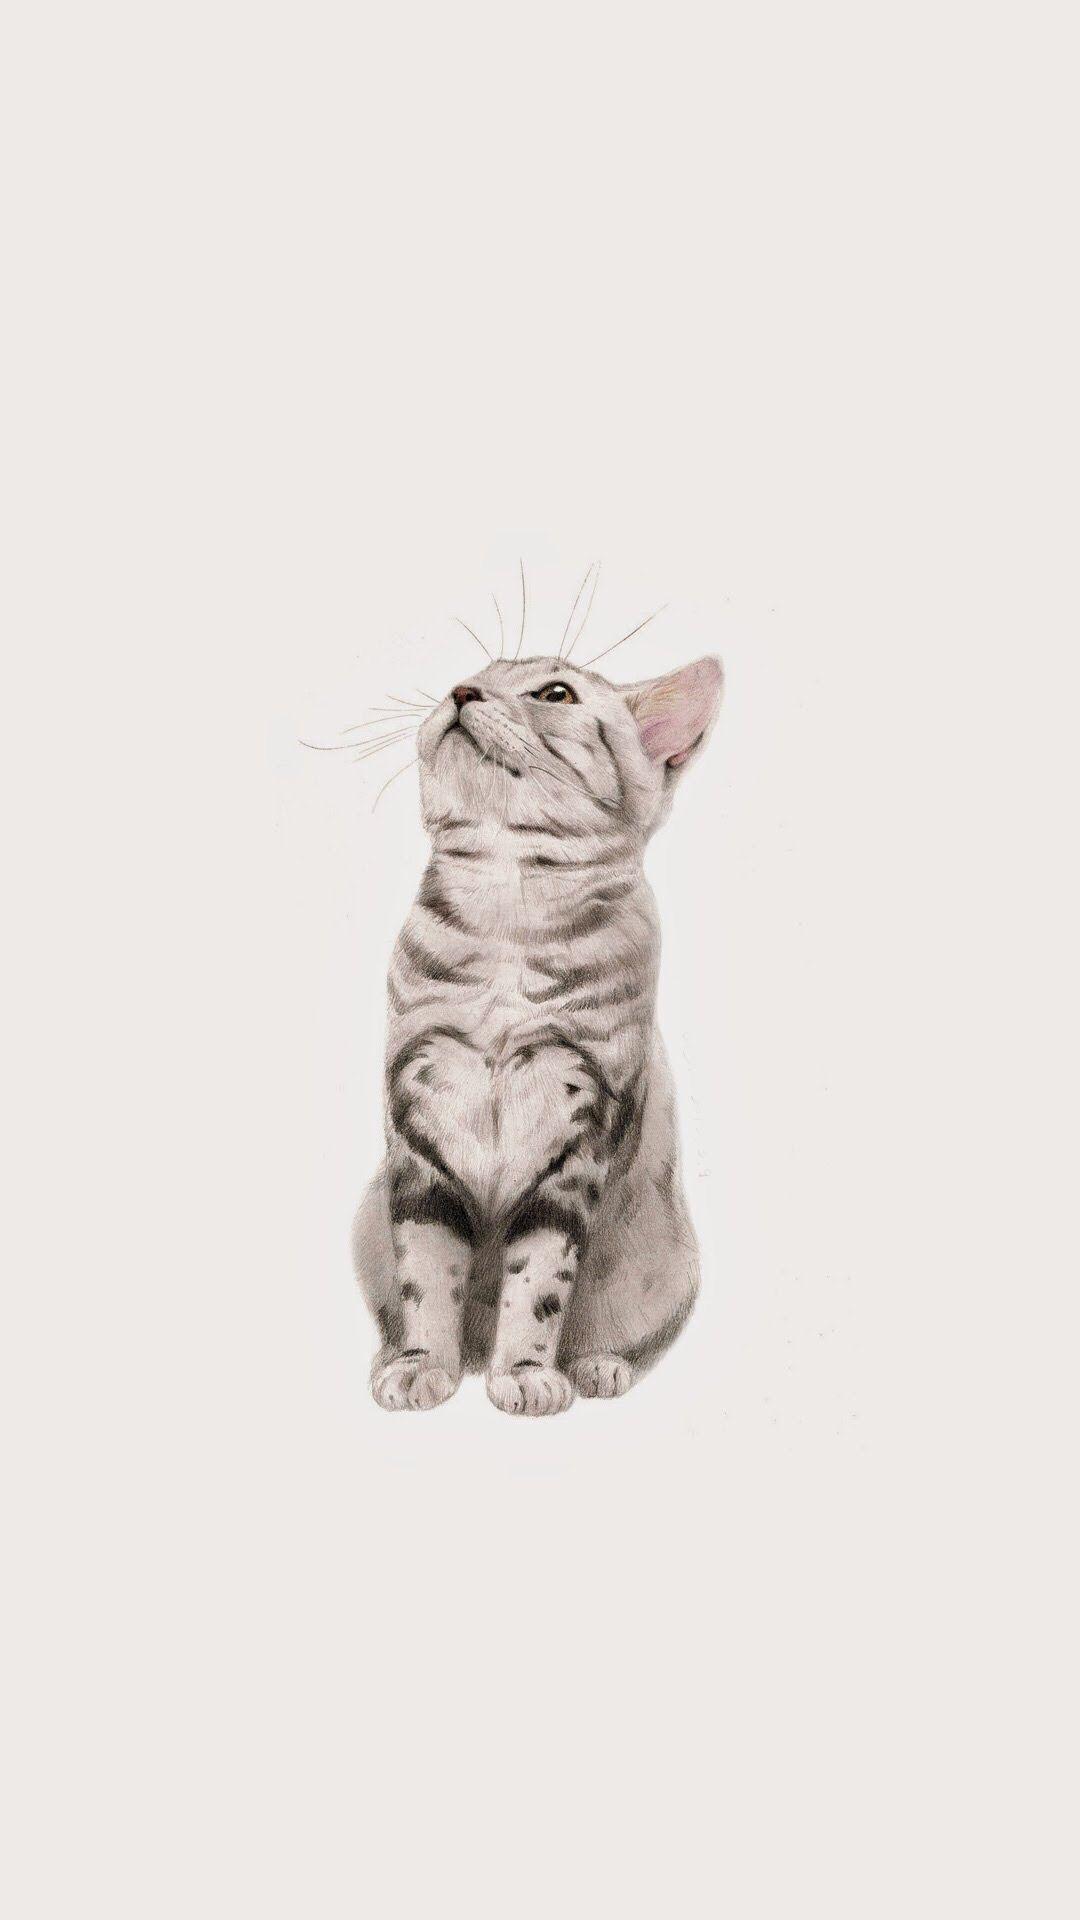 iPhone Wallpaper. wallpaper. Wallpaper, Cat and Animal